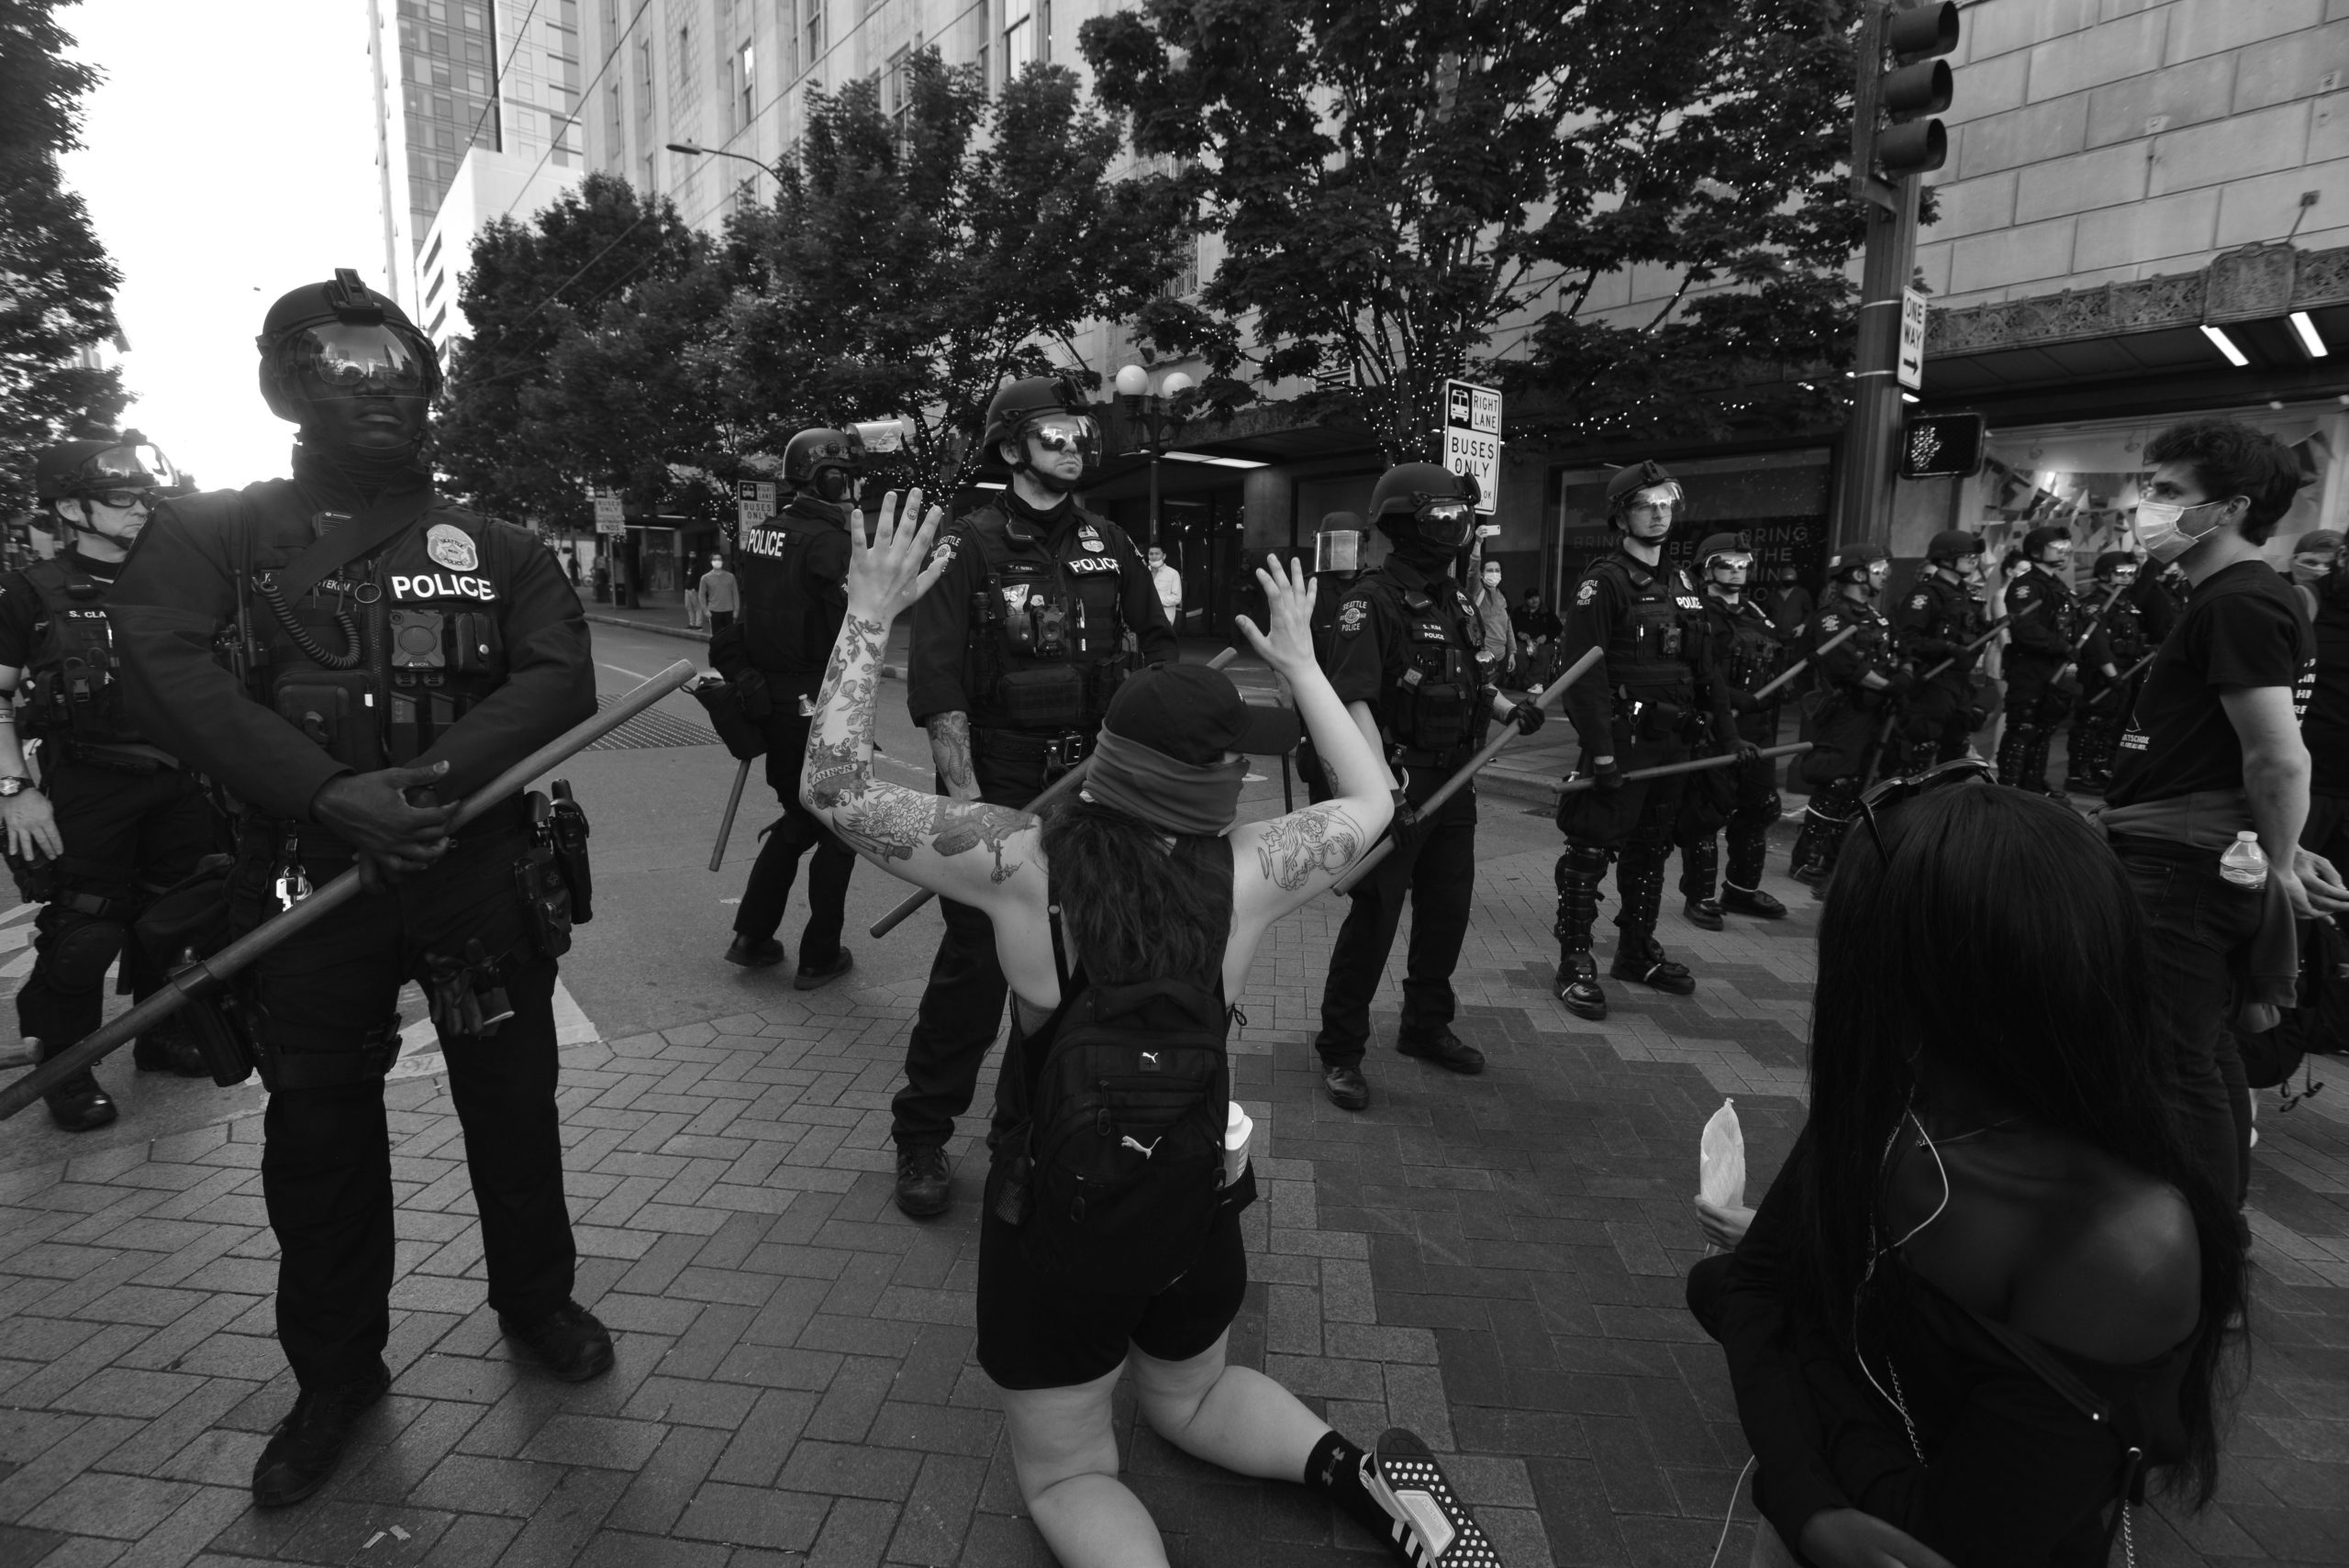 Espectacular reportaje en blanco y negro de las protestas por la muerte de George Floyd en Seattle